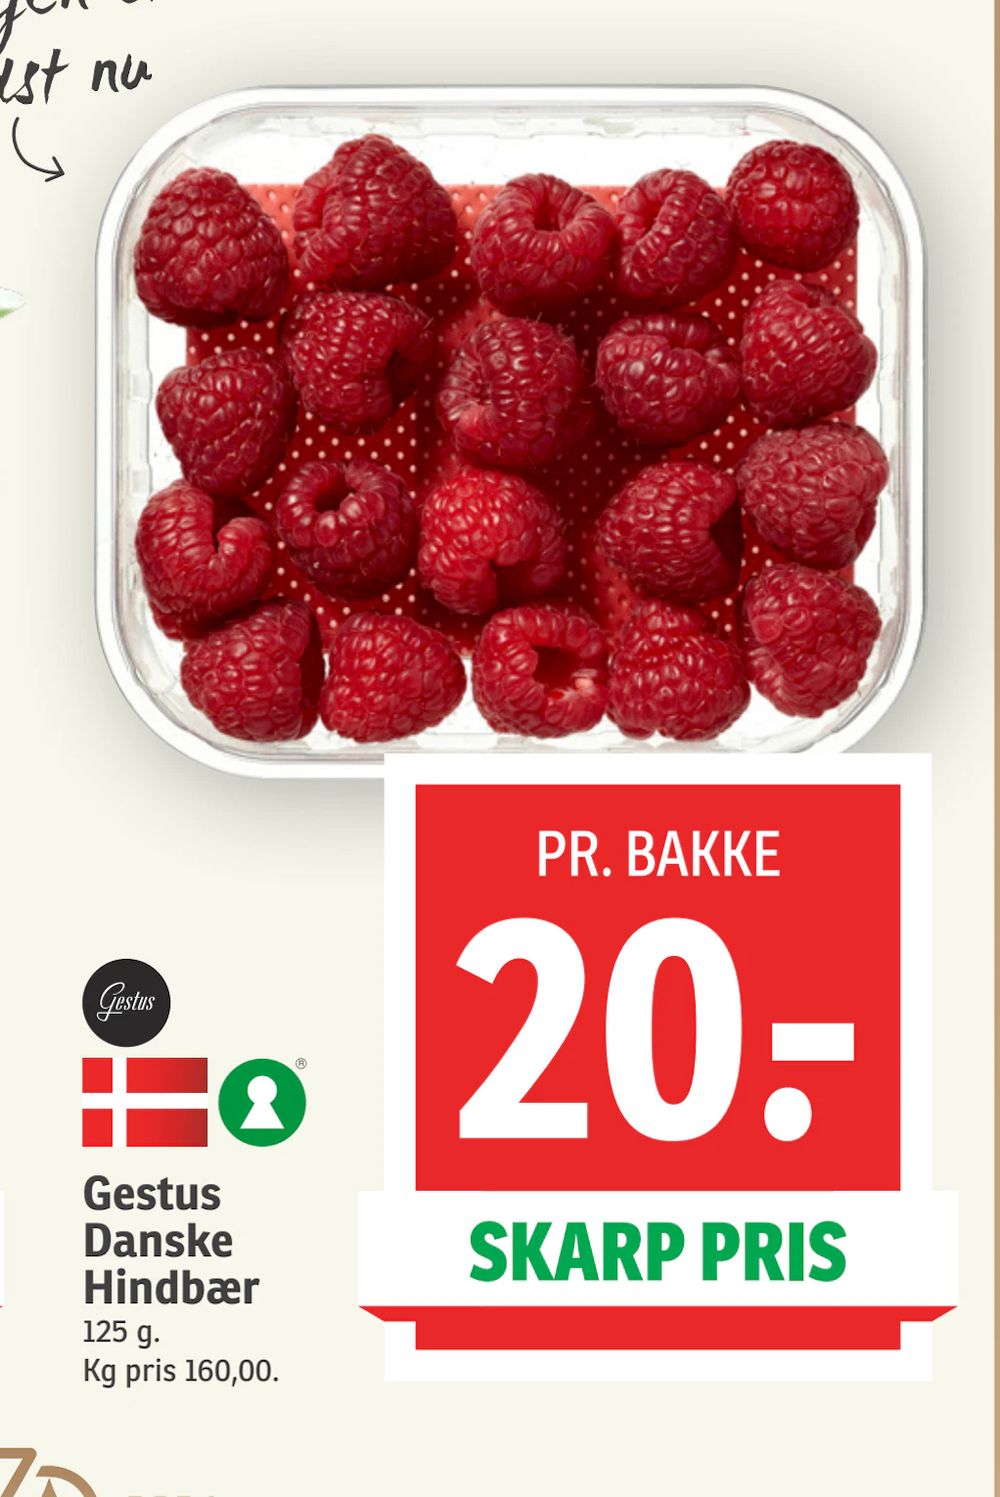 Tilbud på Gestus Danske Hindbær fra SPAR til 20 kr.